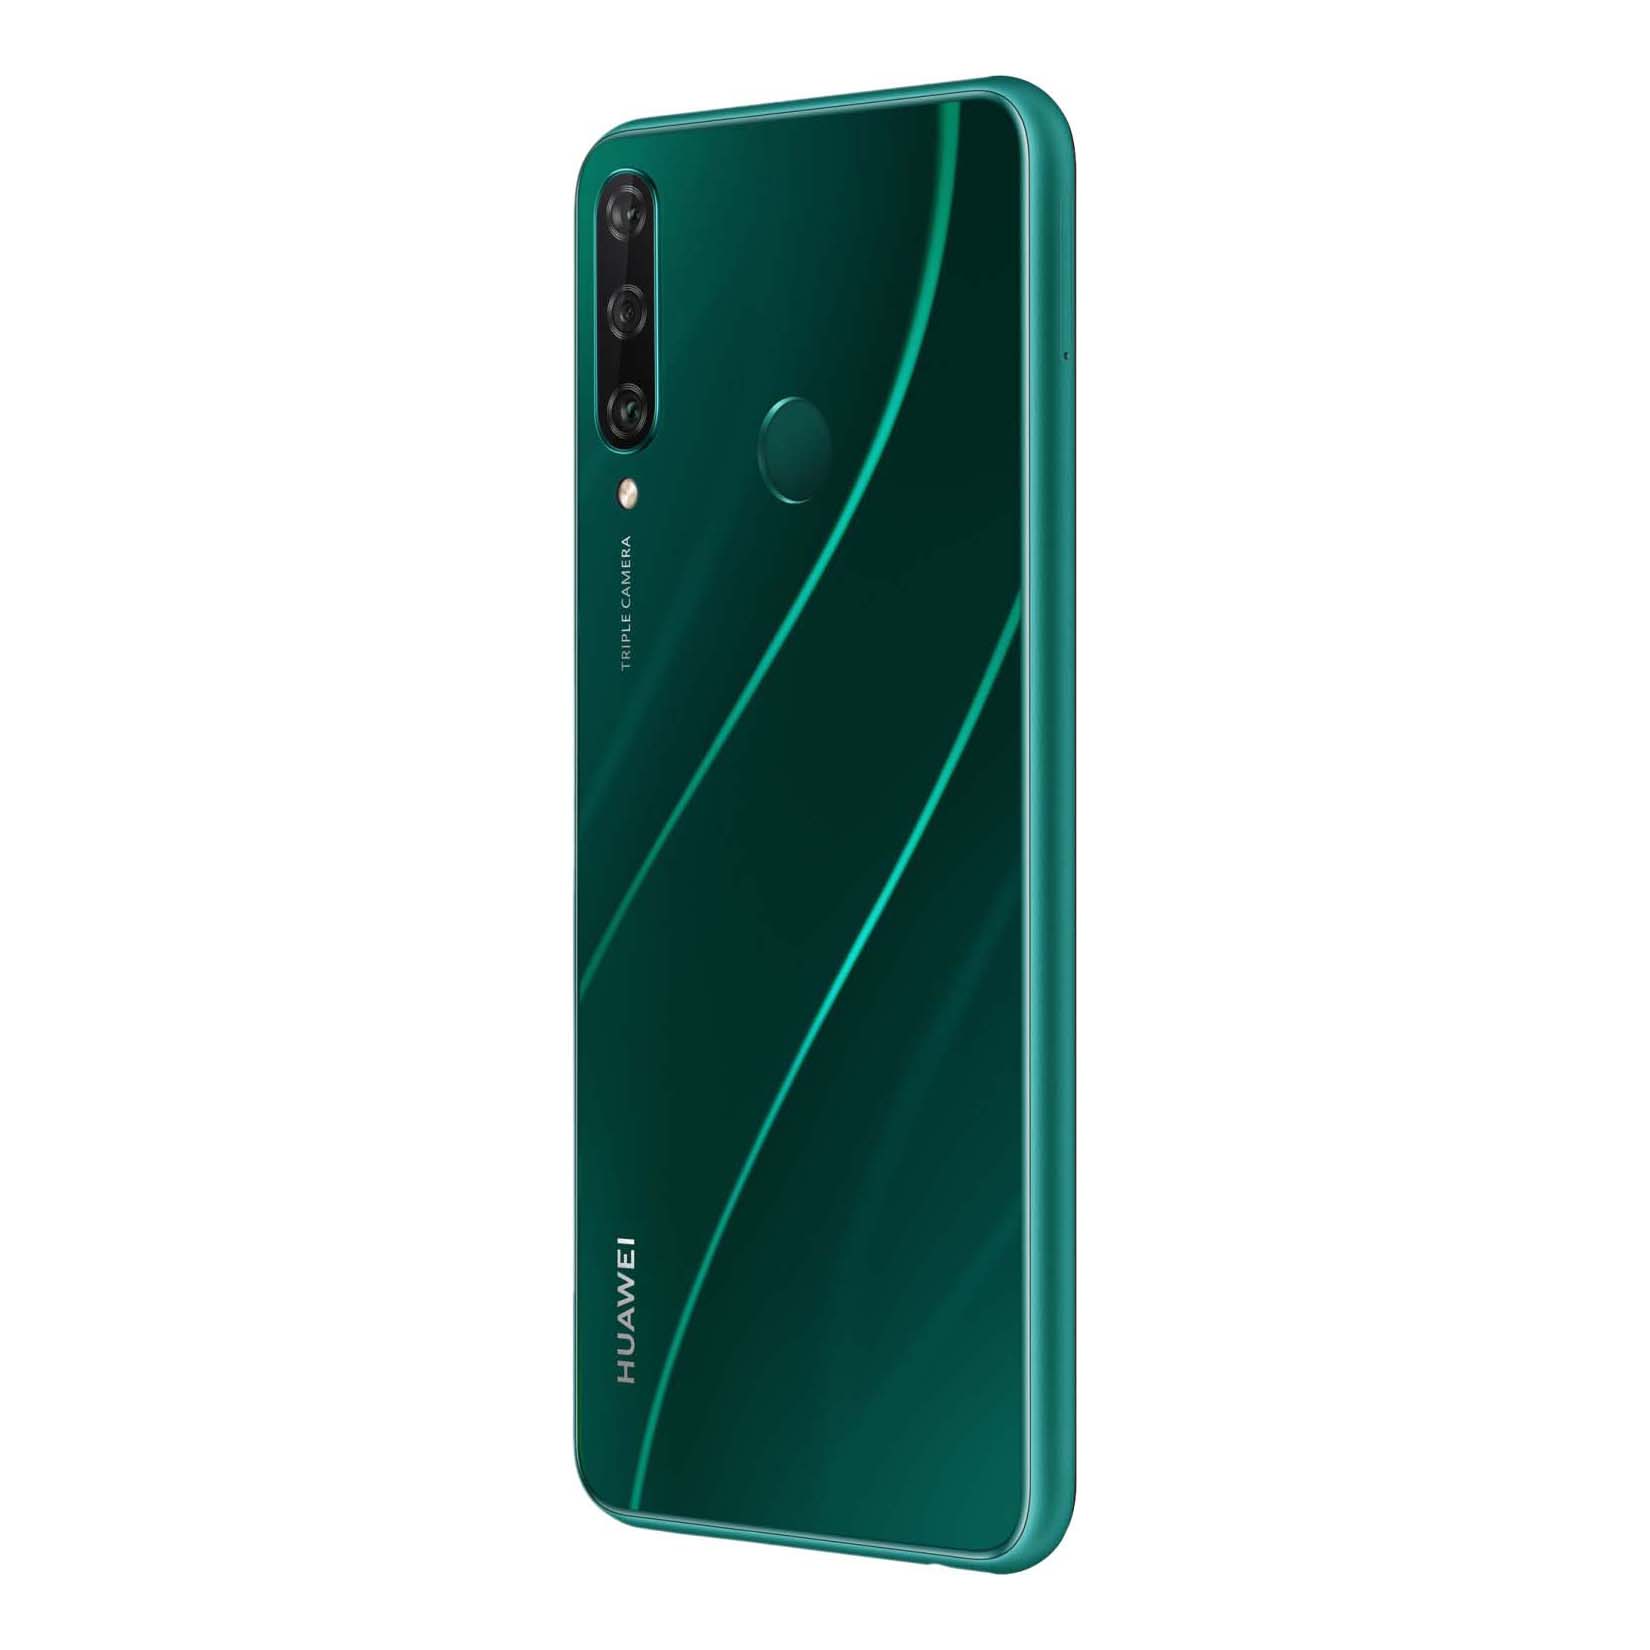 Huawei 64gb купить. Смартфон Huawei y6p 64gb, зеленый. Huawei y6p Emerald Green. Хуавей y6 3 64gb. Смартфон Huawei y6p Emerald Green (med-lx9n).